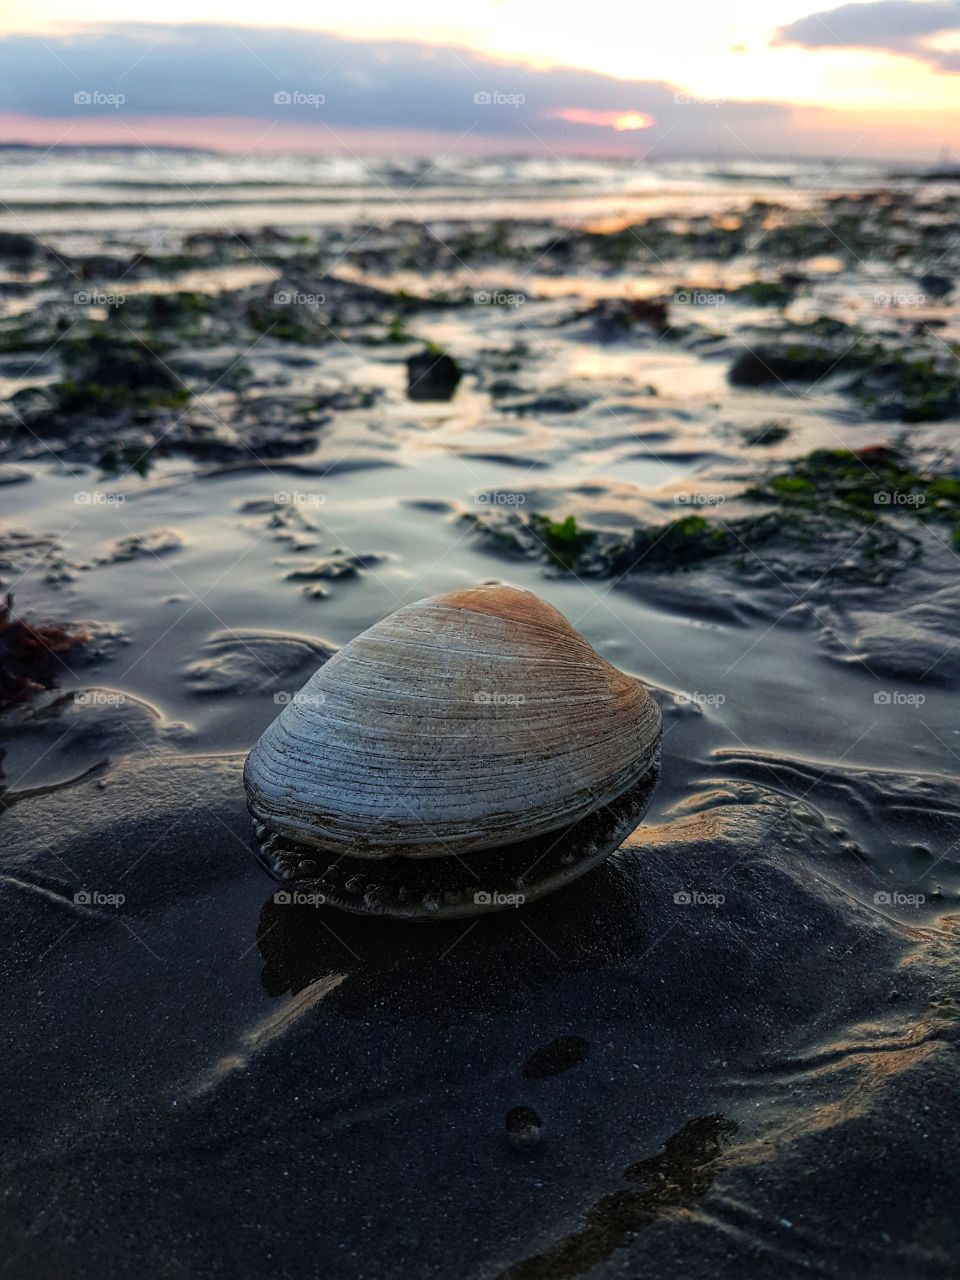 Seashell at Stokes Bay beach